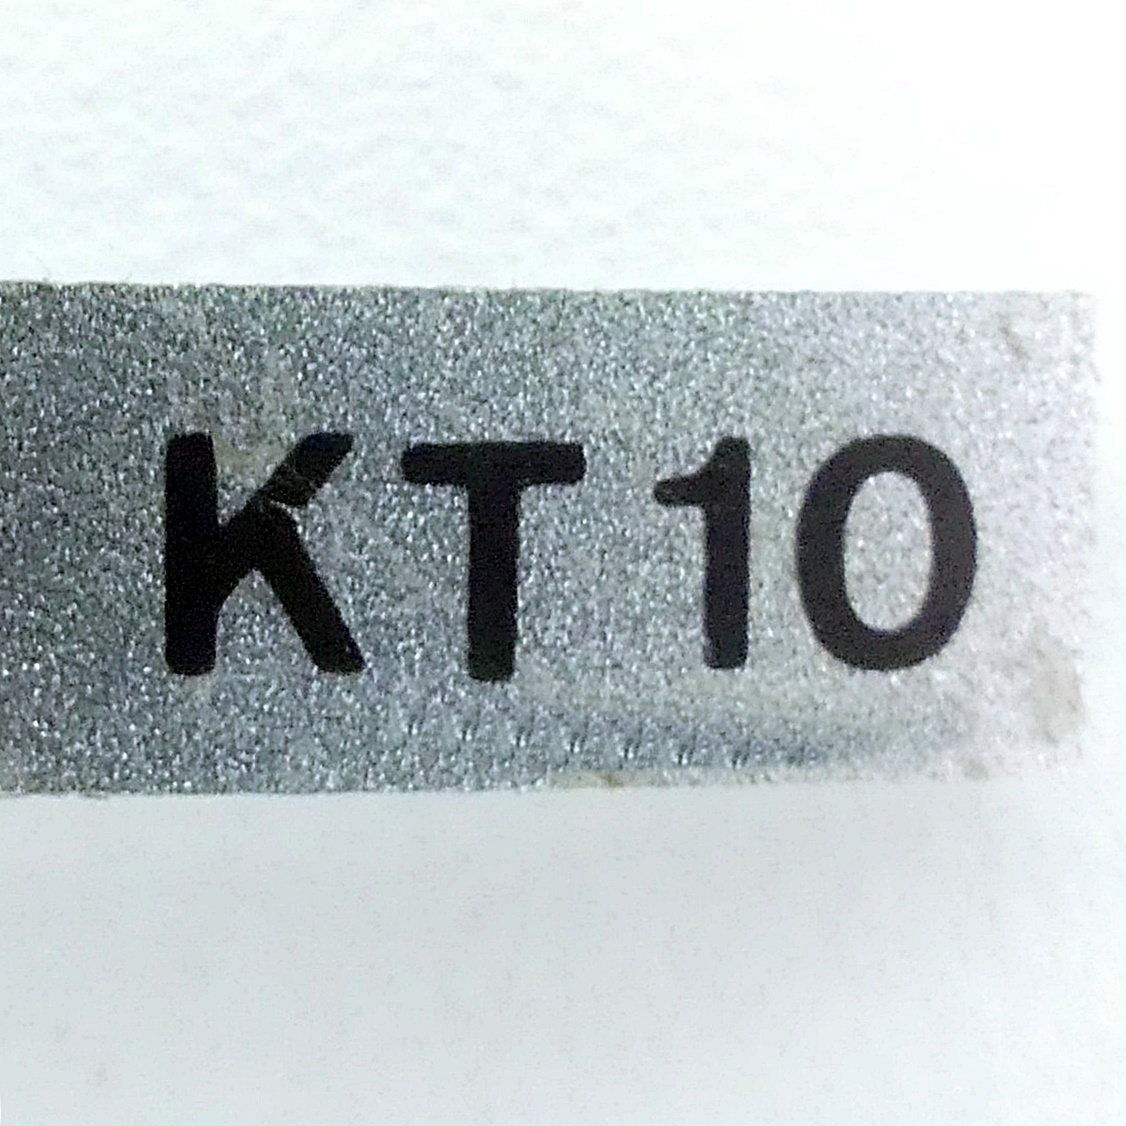 Proximity switch KT10 